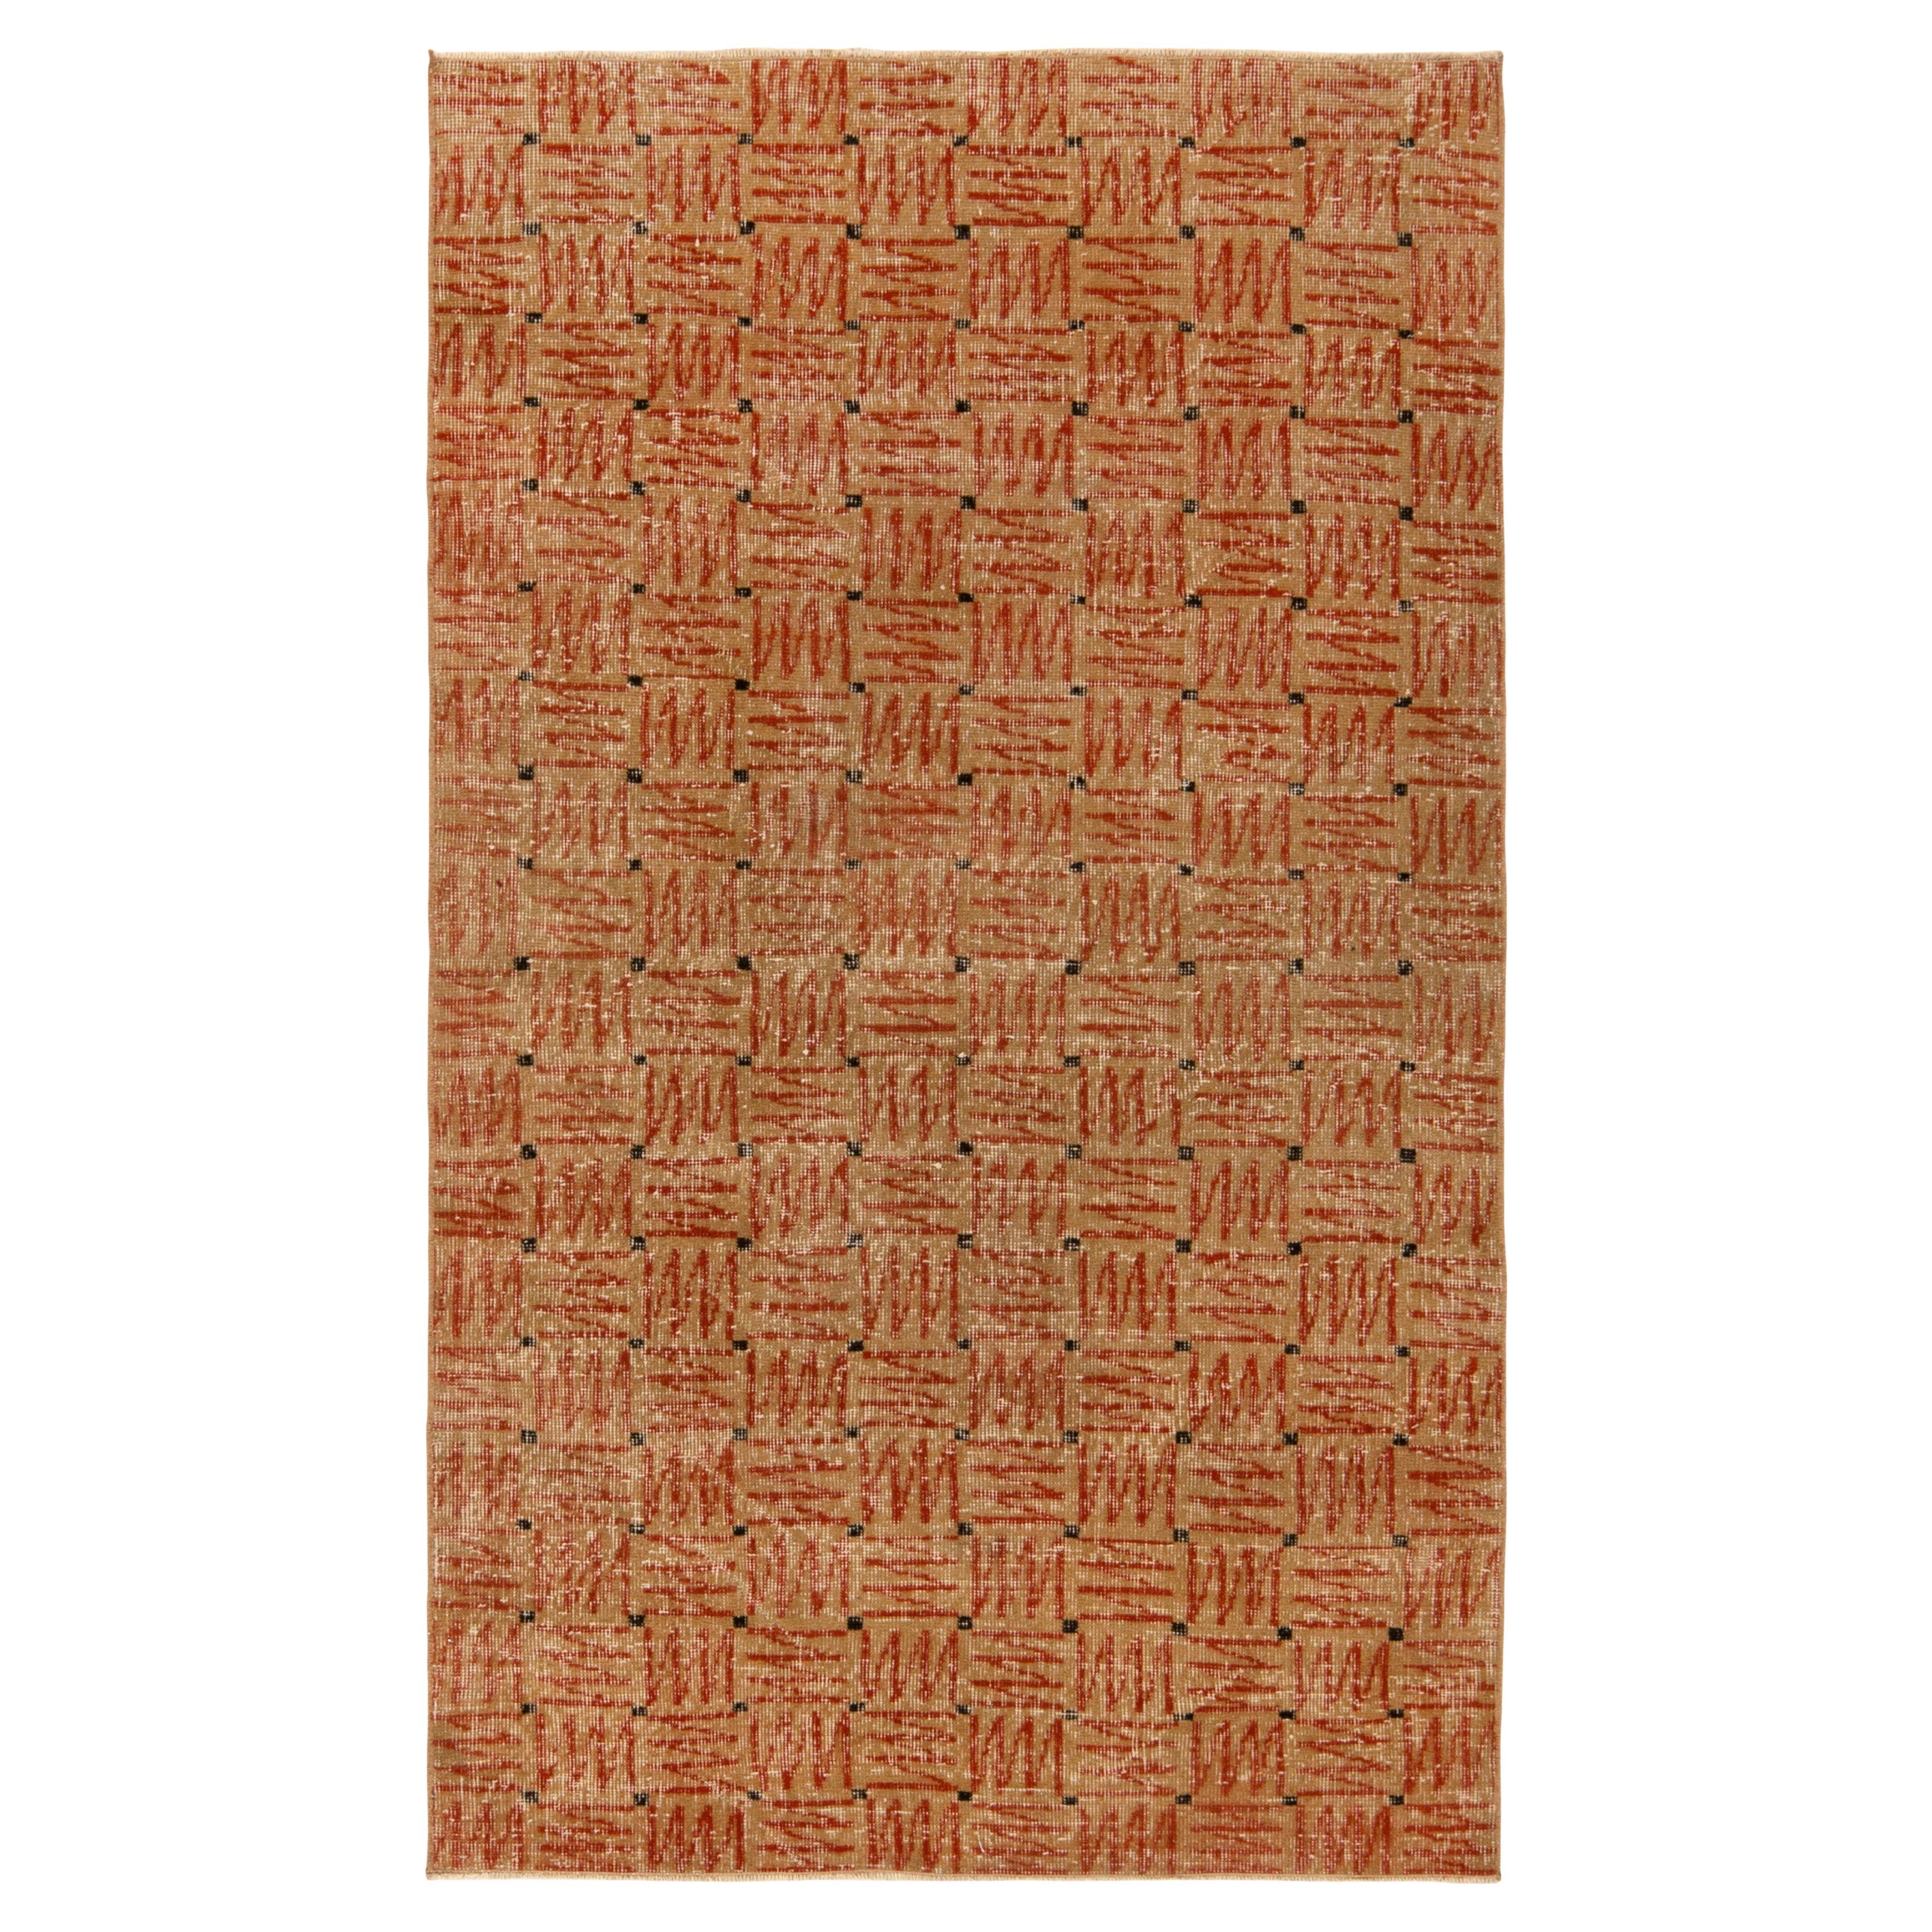 Vintage-Deko-Teppich aus den 1960er Jahren mit geometrischen Mustern in Beige-Braun und Rot, von Teppich & Kelim